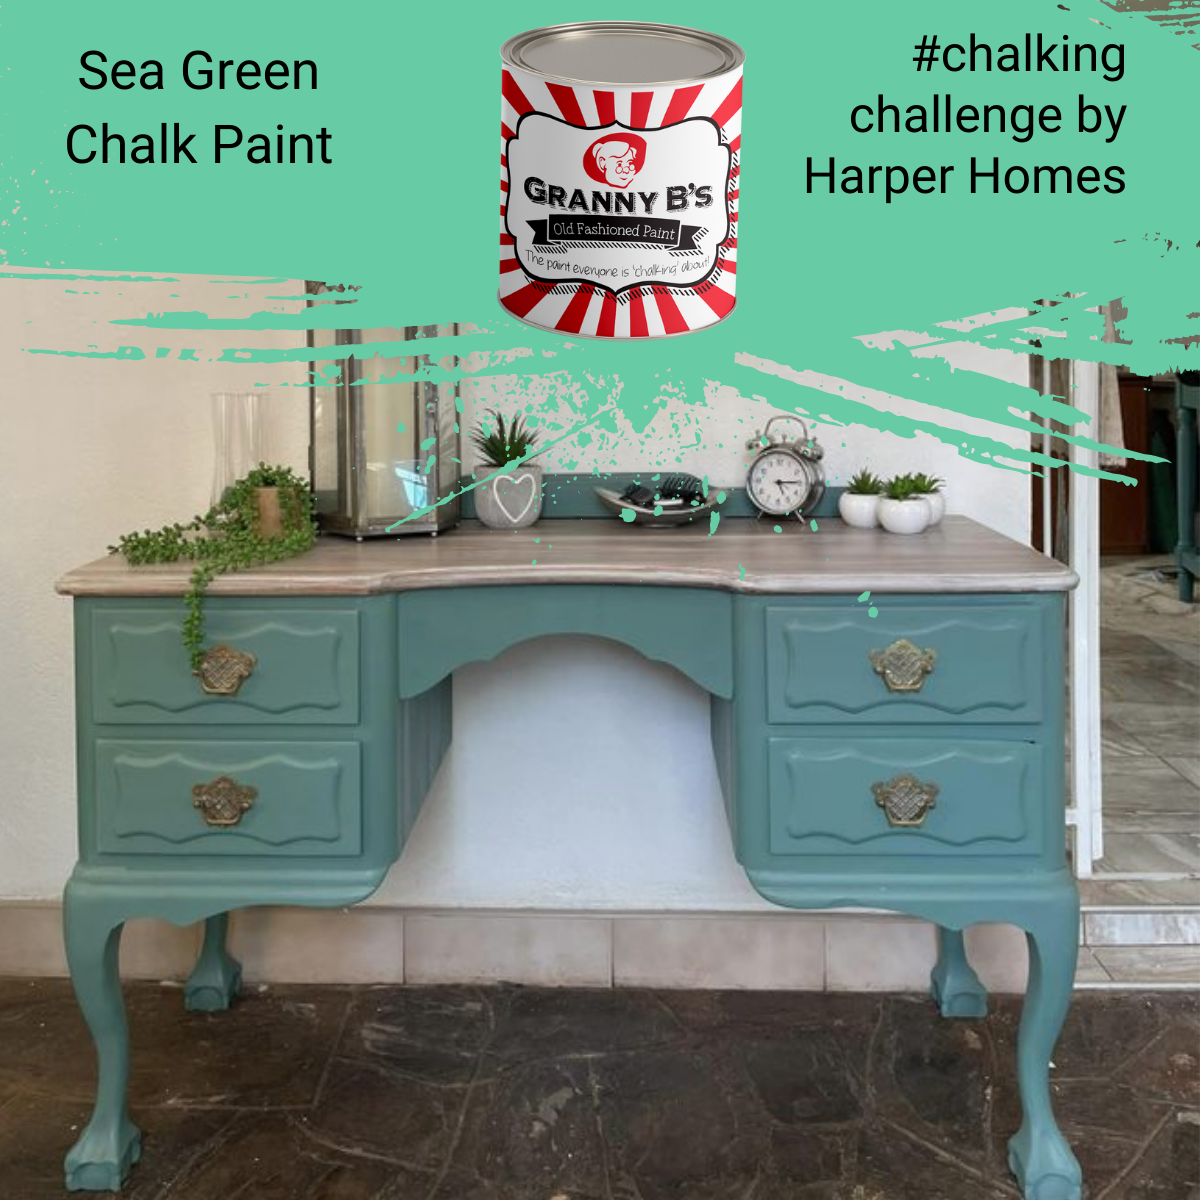 Chalkpaint - Sea Green (Sea Foam Green)